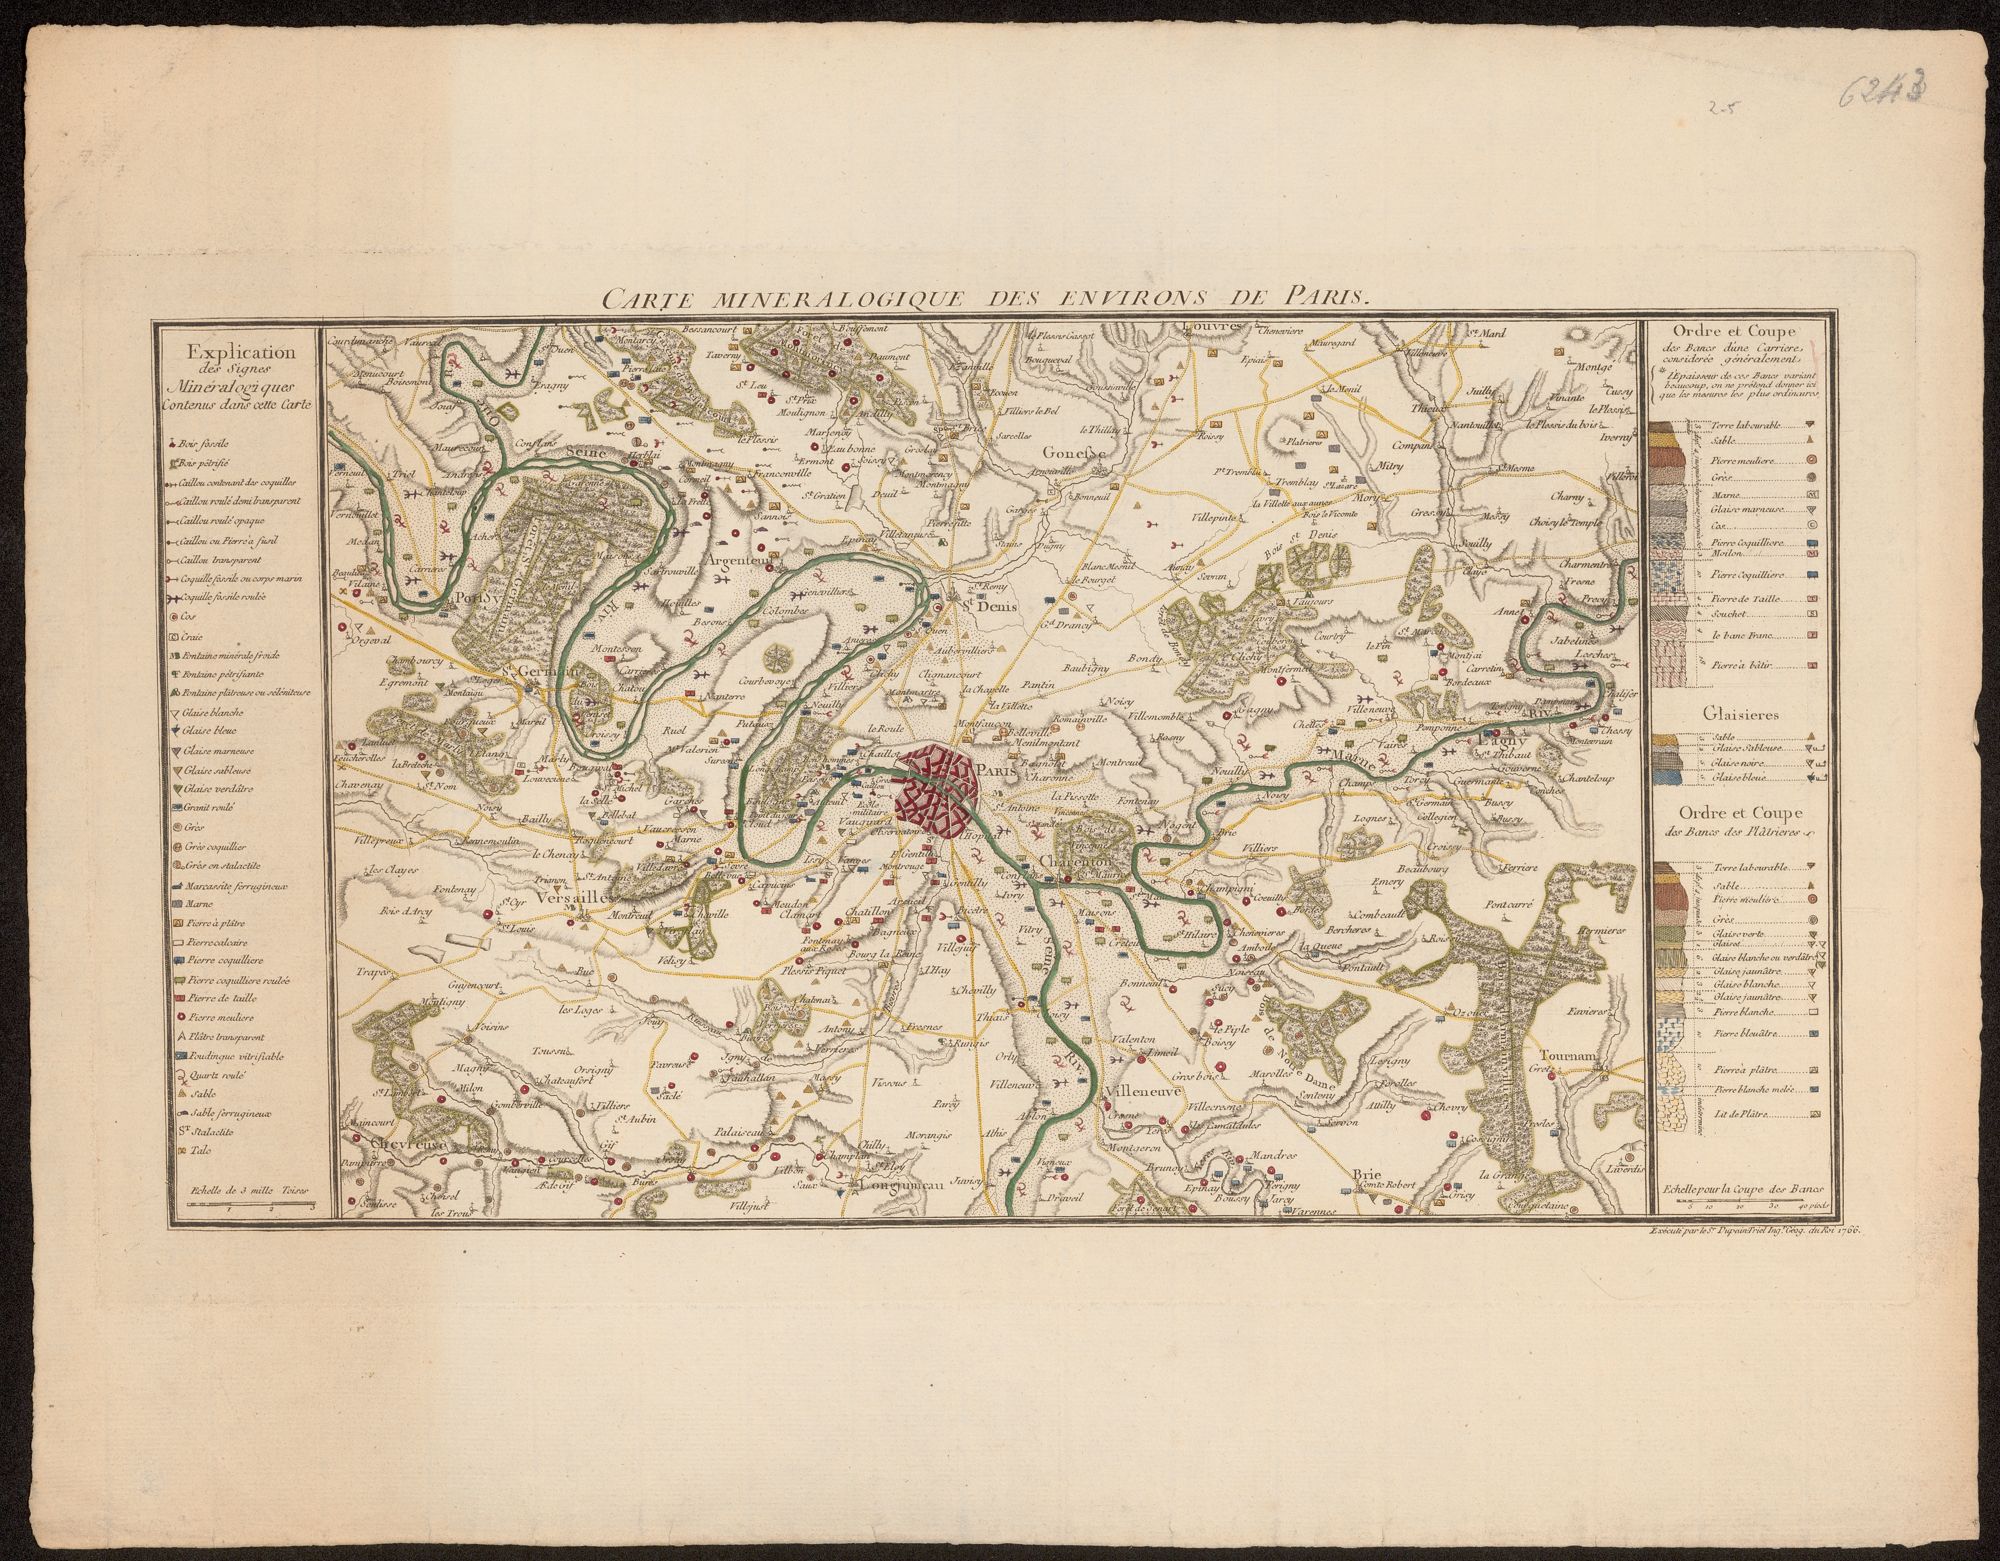 Carte minéralogique des environs de Paris, 1766